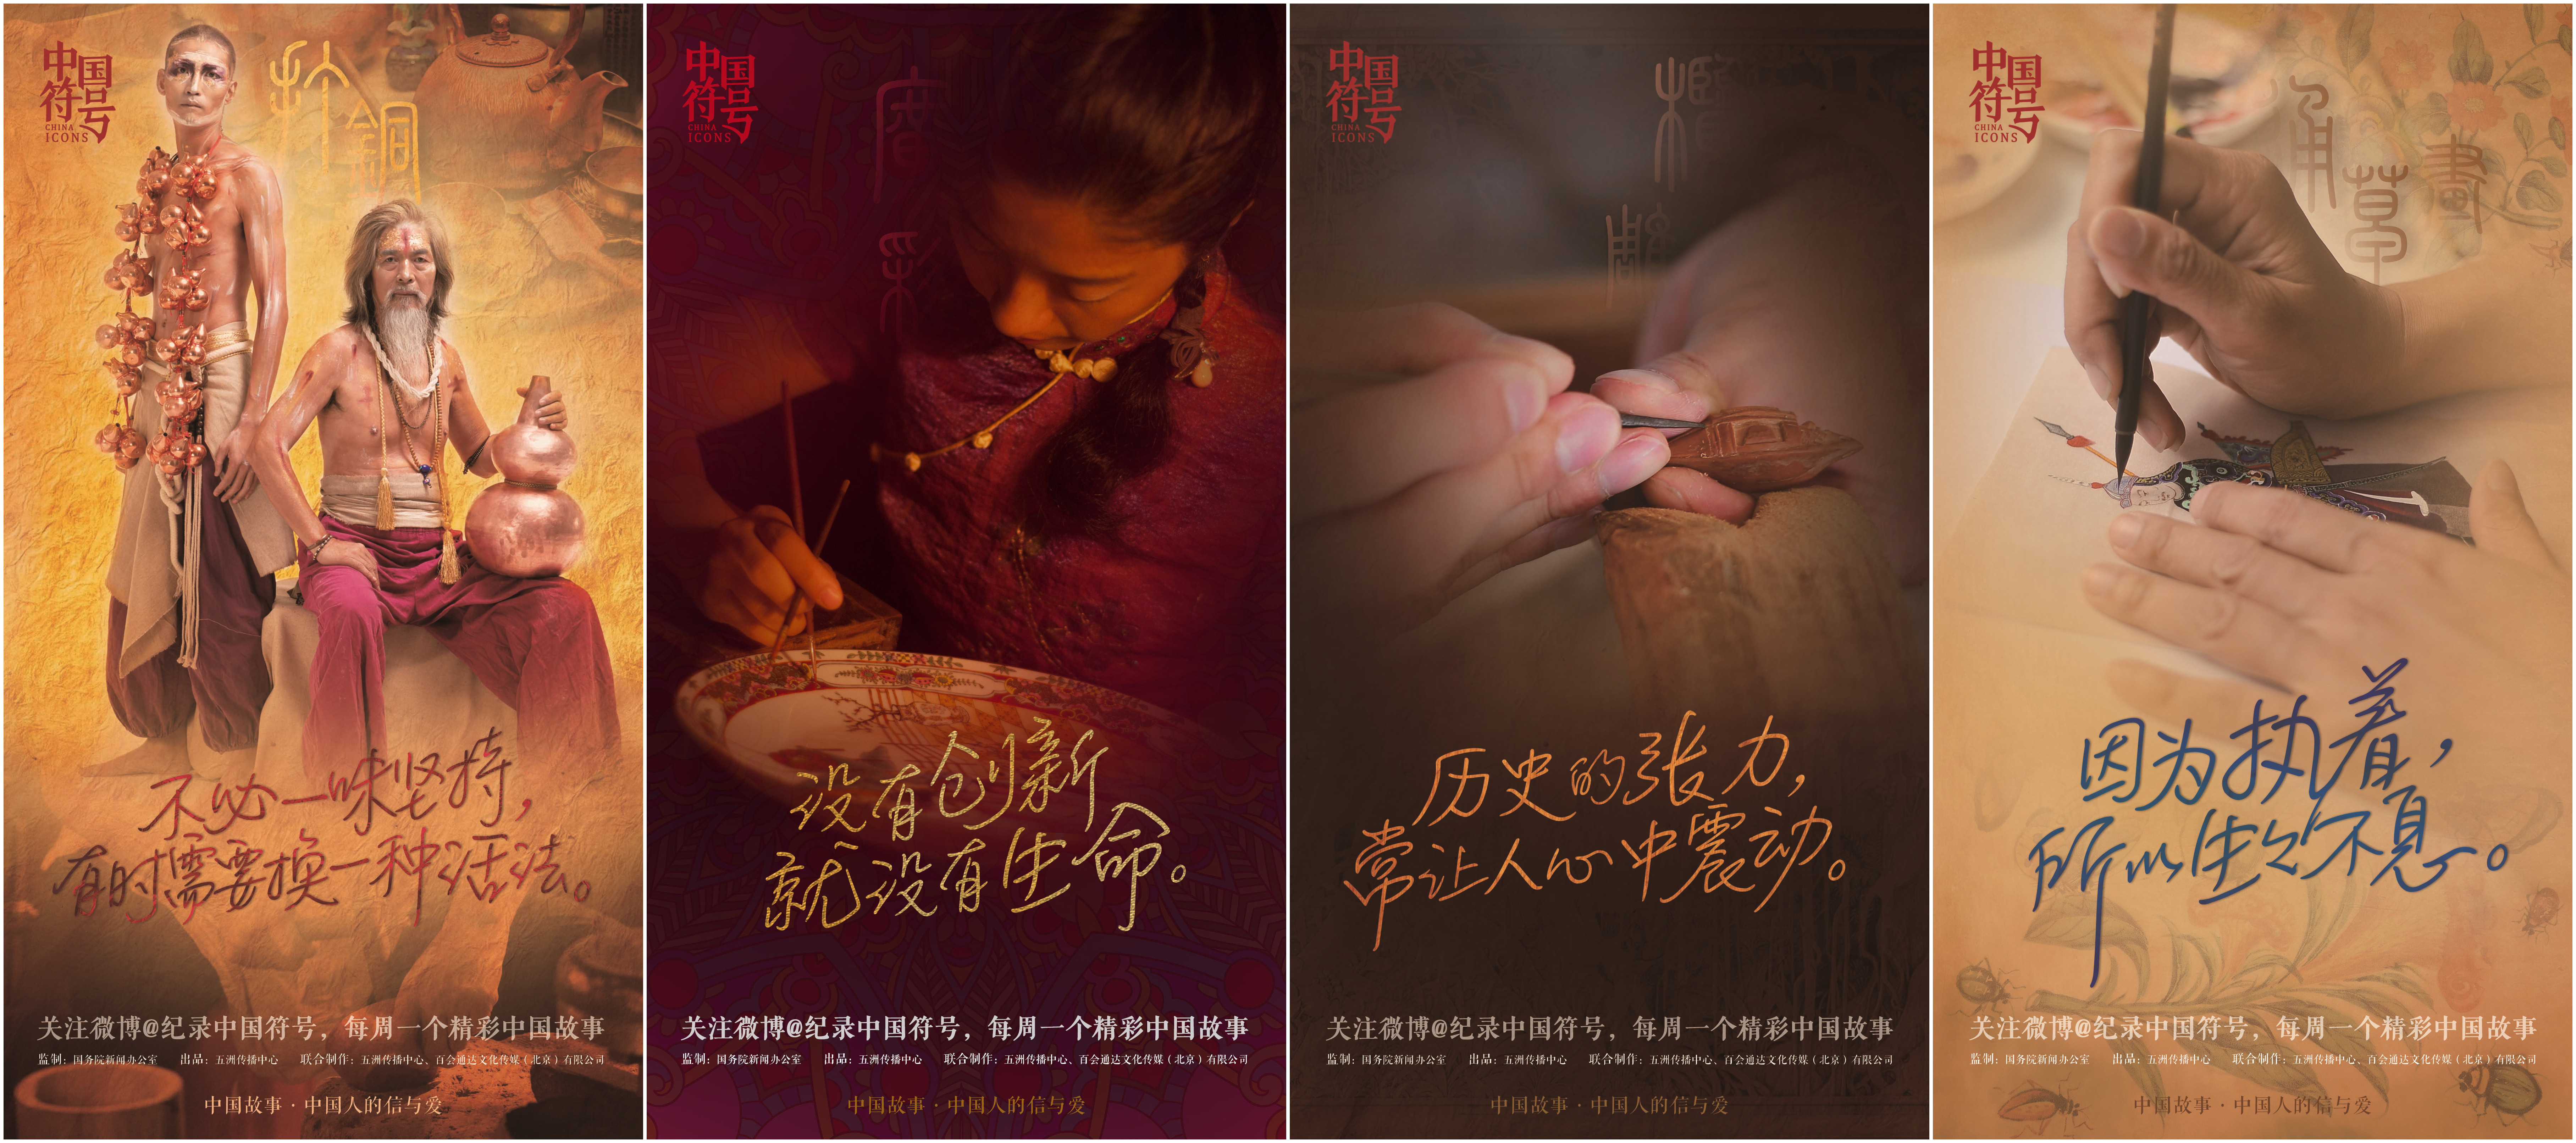 《中国符号》“手艺仁心”系列微纪录片全球首发 广州故事占一半